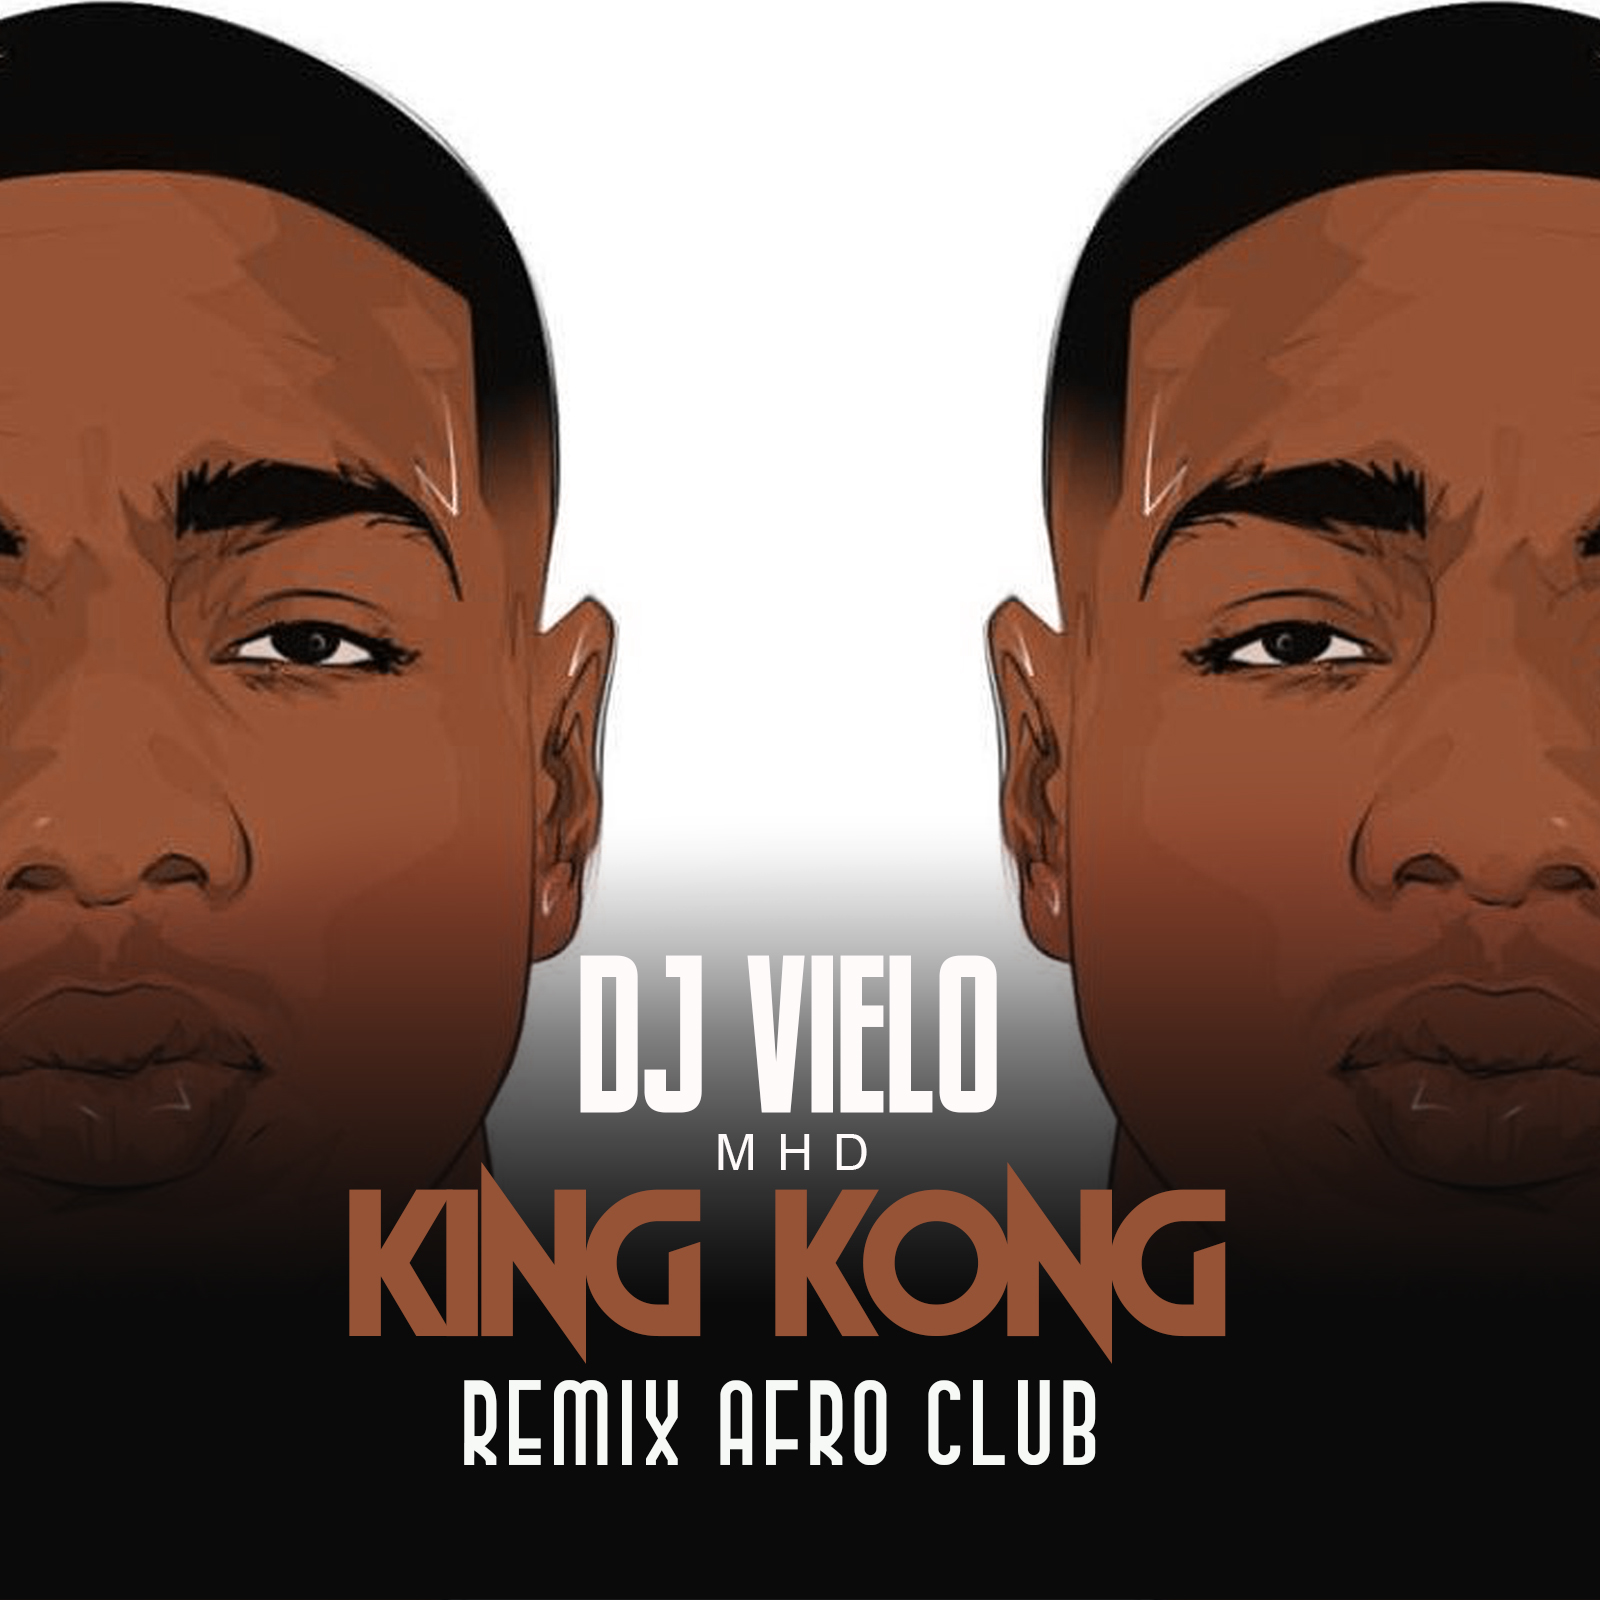 ډاونلوډ Dj Vielo X MHD - AFRO TRAP Part.11 (King Kong) Remix Afro Club DISPO SUR SPOTIFY, DEEZER, ITUNES